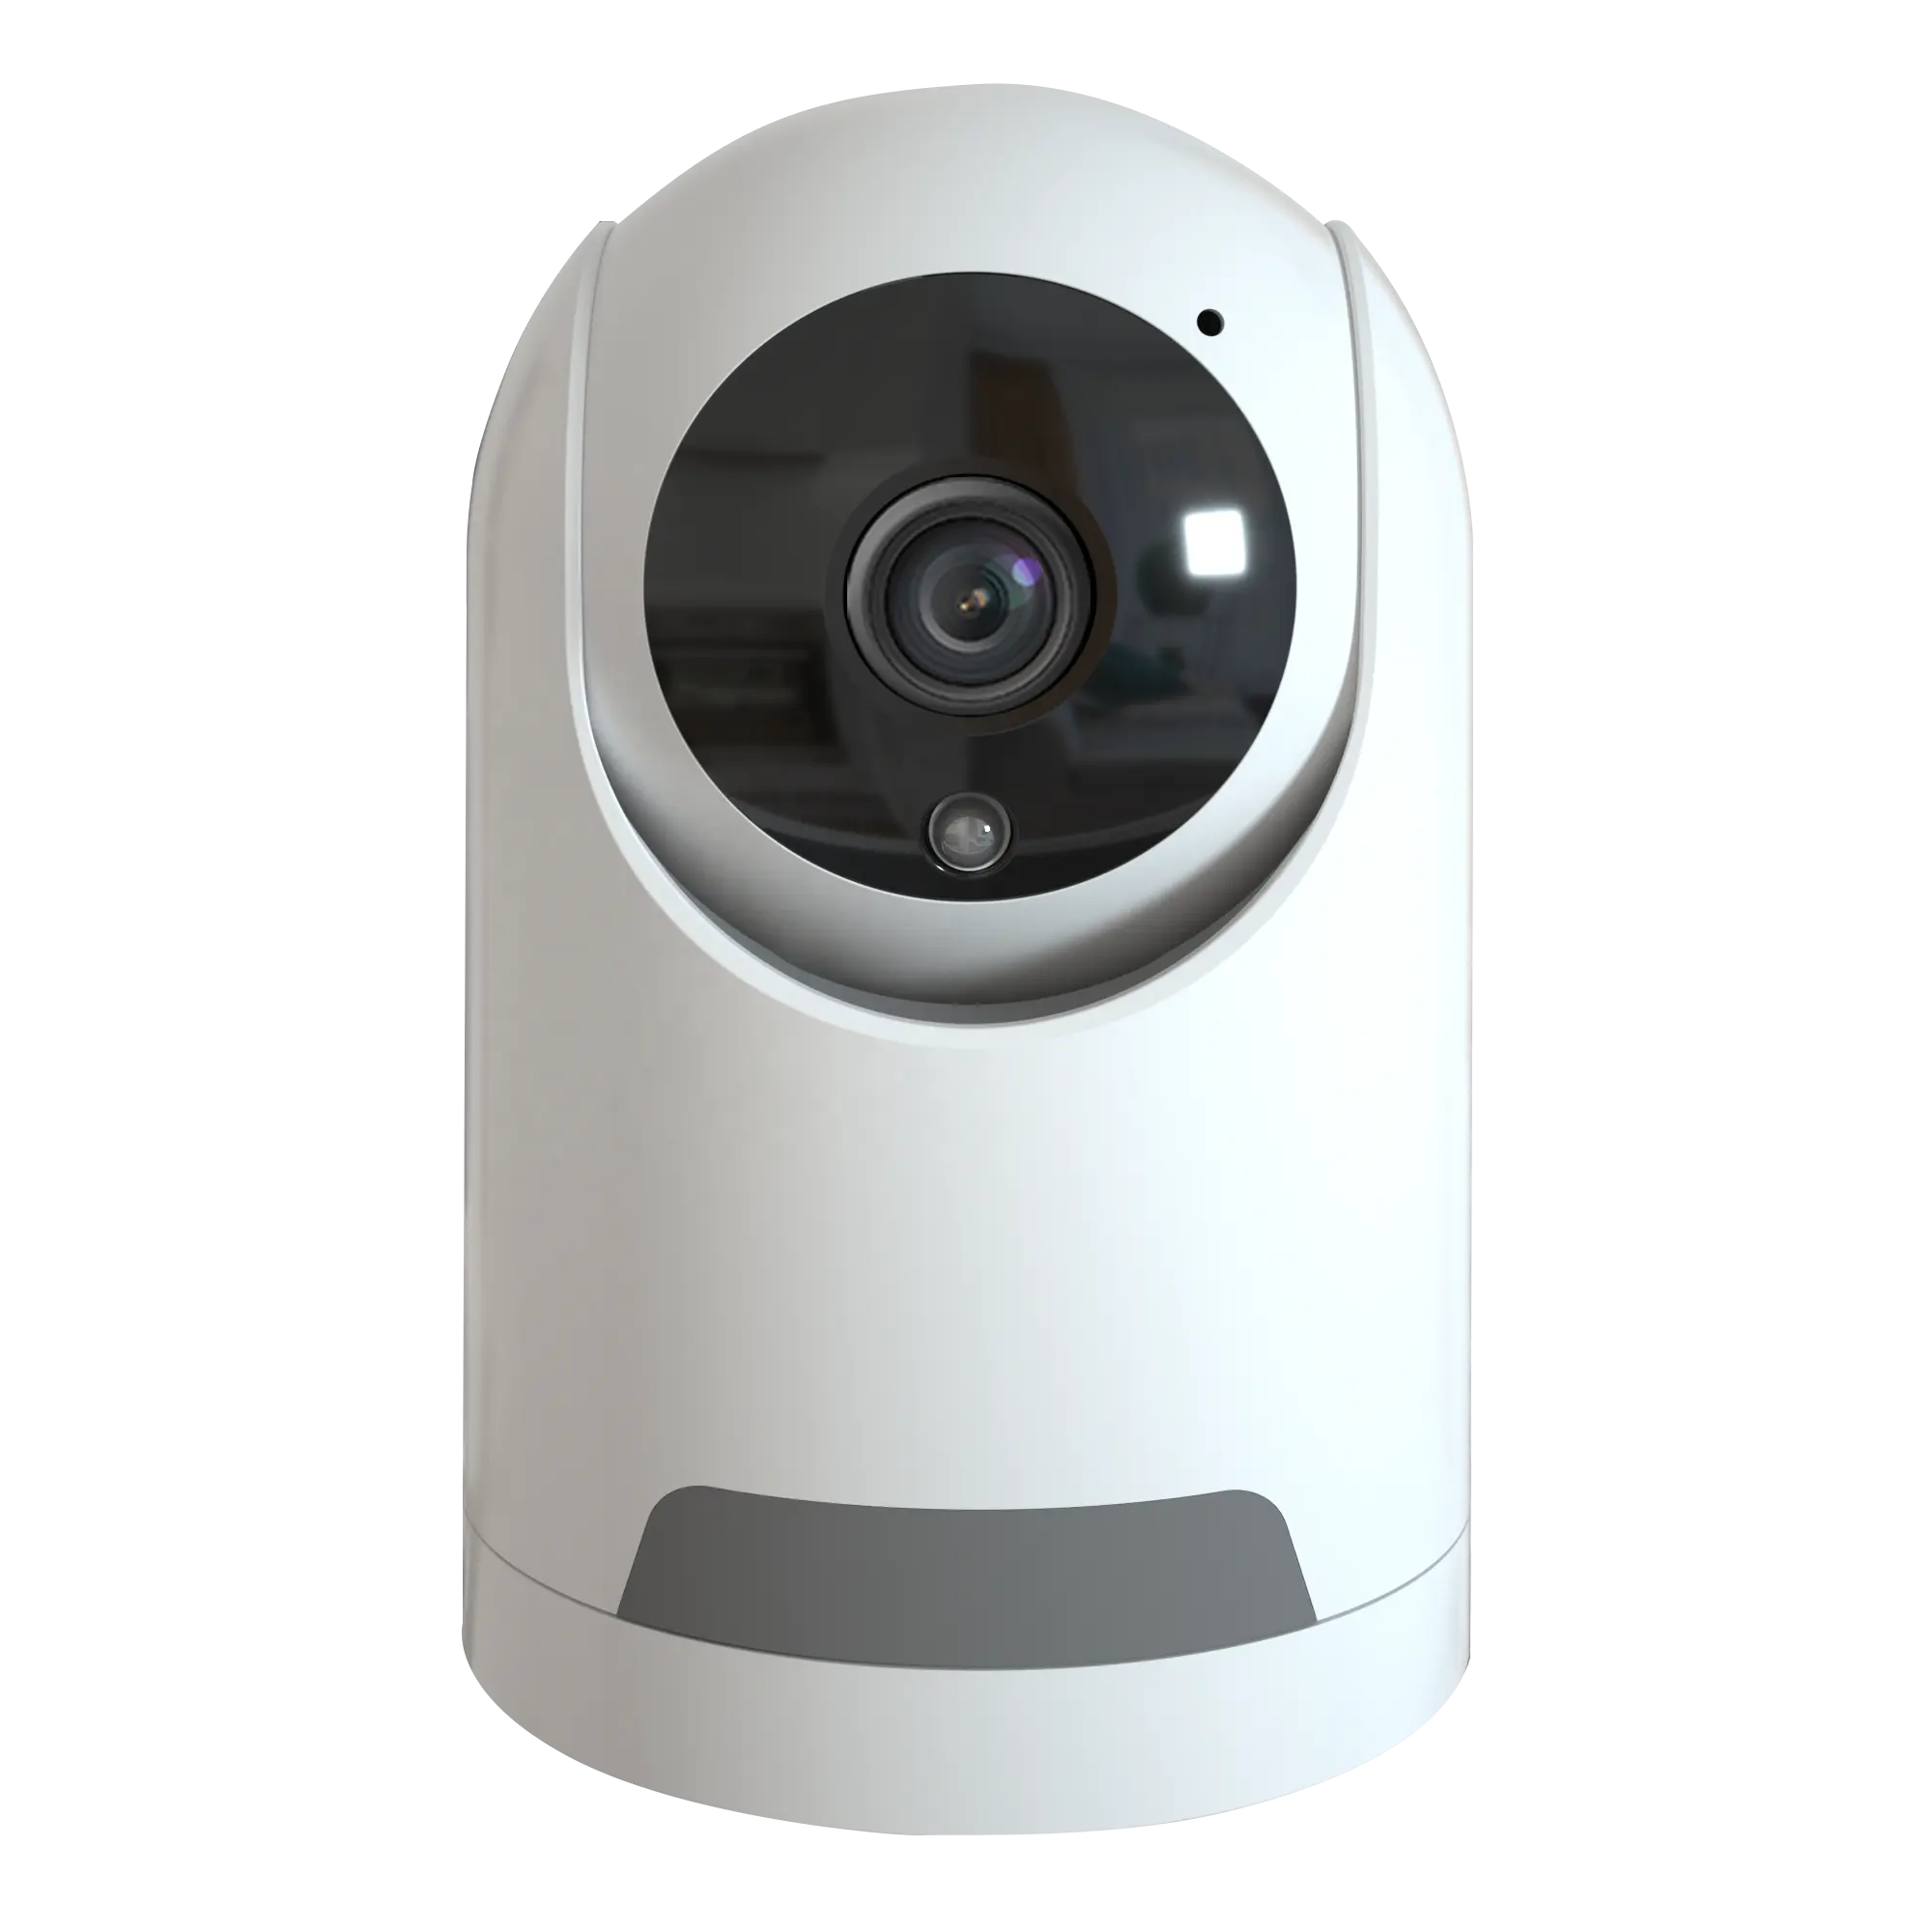 मिनी आईपी सीसीटीवी वीडियो निगरानी प्रणाली इनडोर PTZ कैमरा आउटडोर/इनडोर स्मार्ट घर सुरक्षा कैमरा 2 तरह ऑडियो